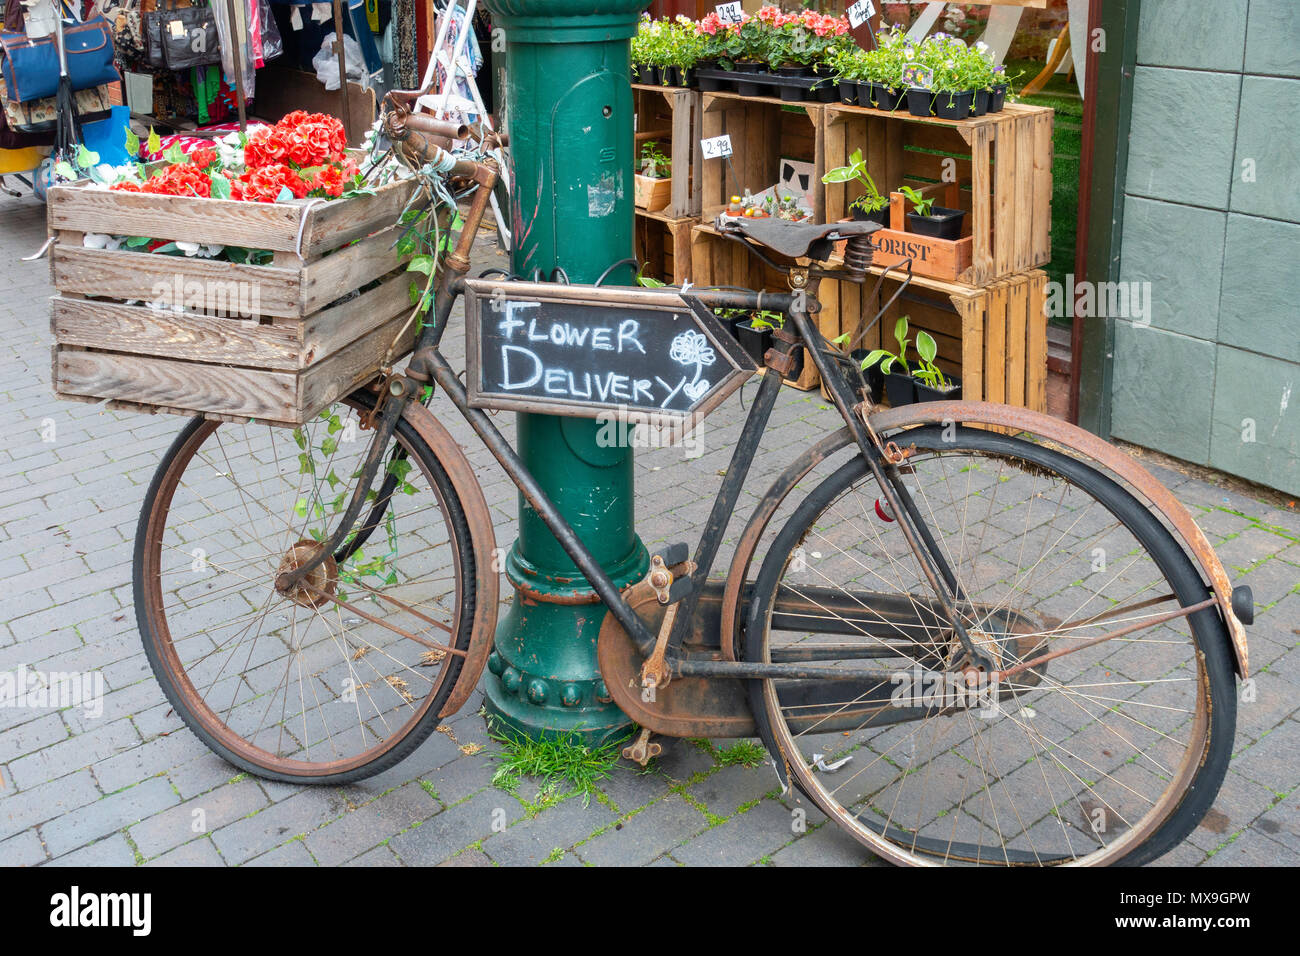 Ein altes altmodische "Handel" Fahrrad früher für Lieferungen jetzt  Förderung Creme und braun Florist in Middlesbrough Stockfotografie - Alamy